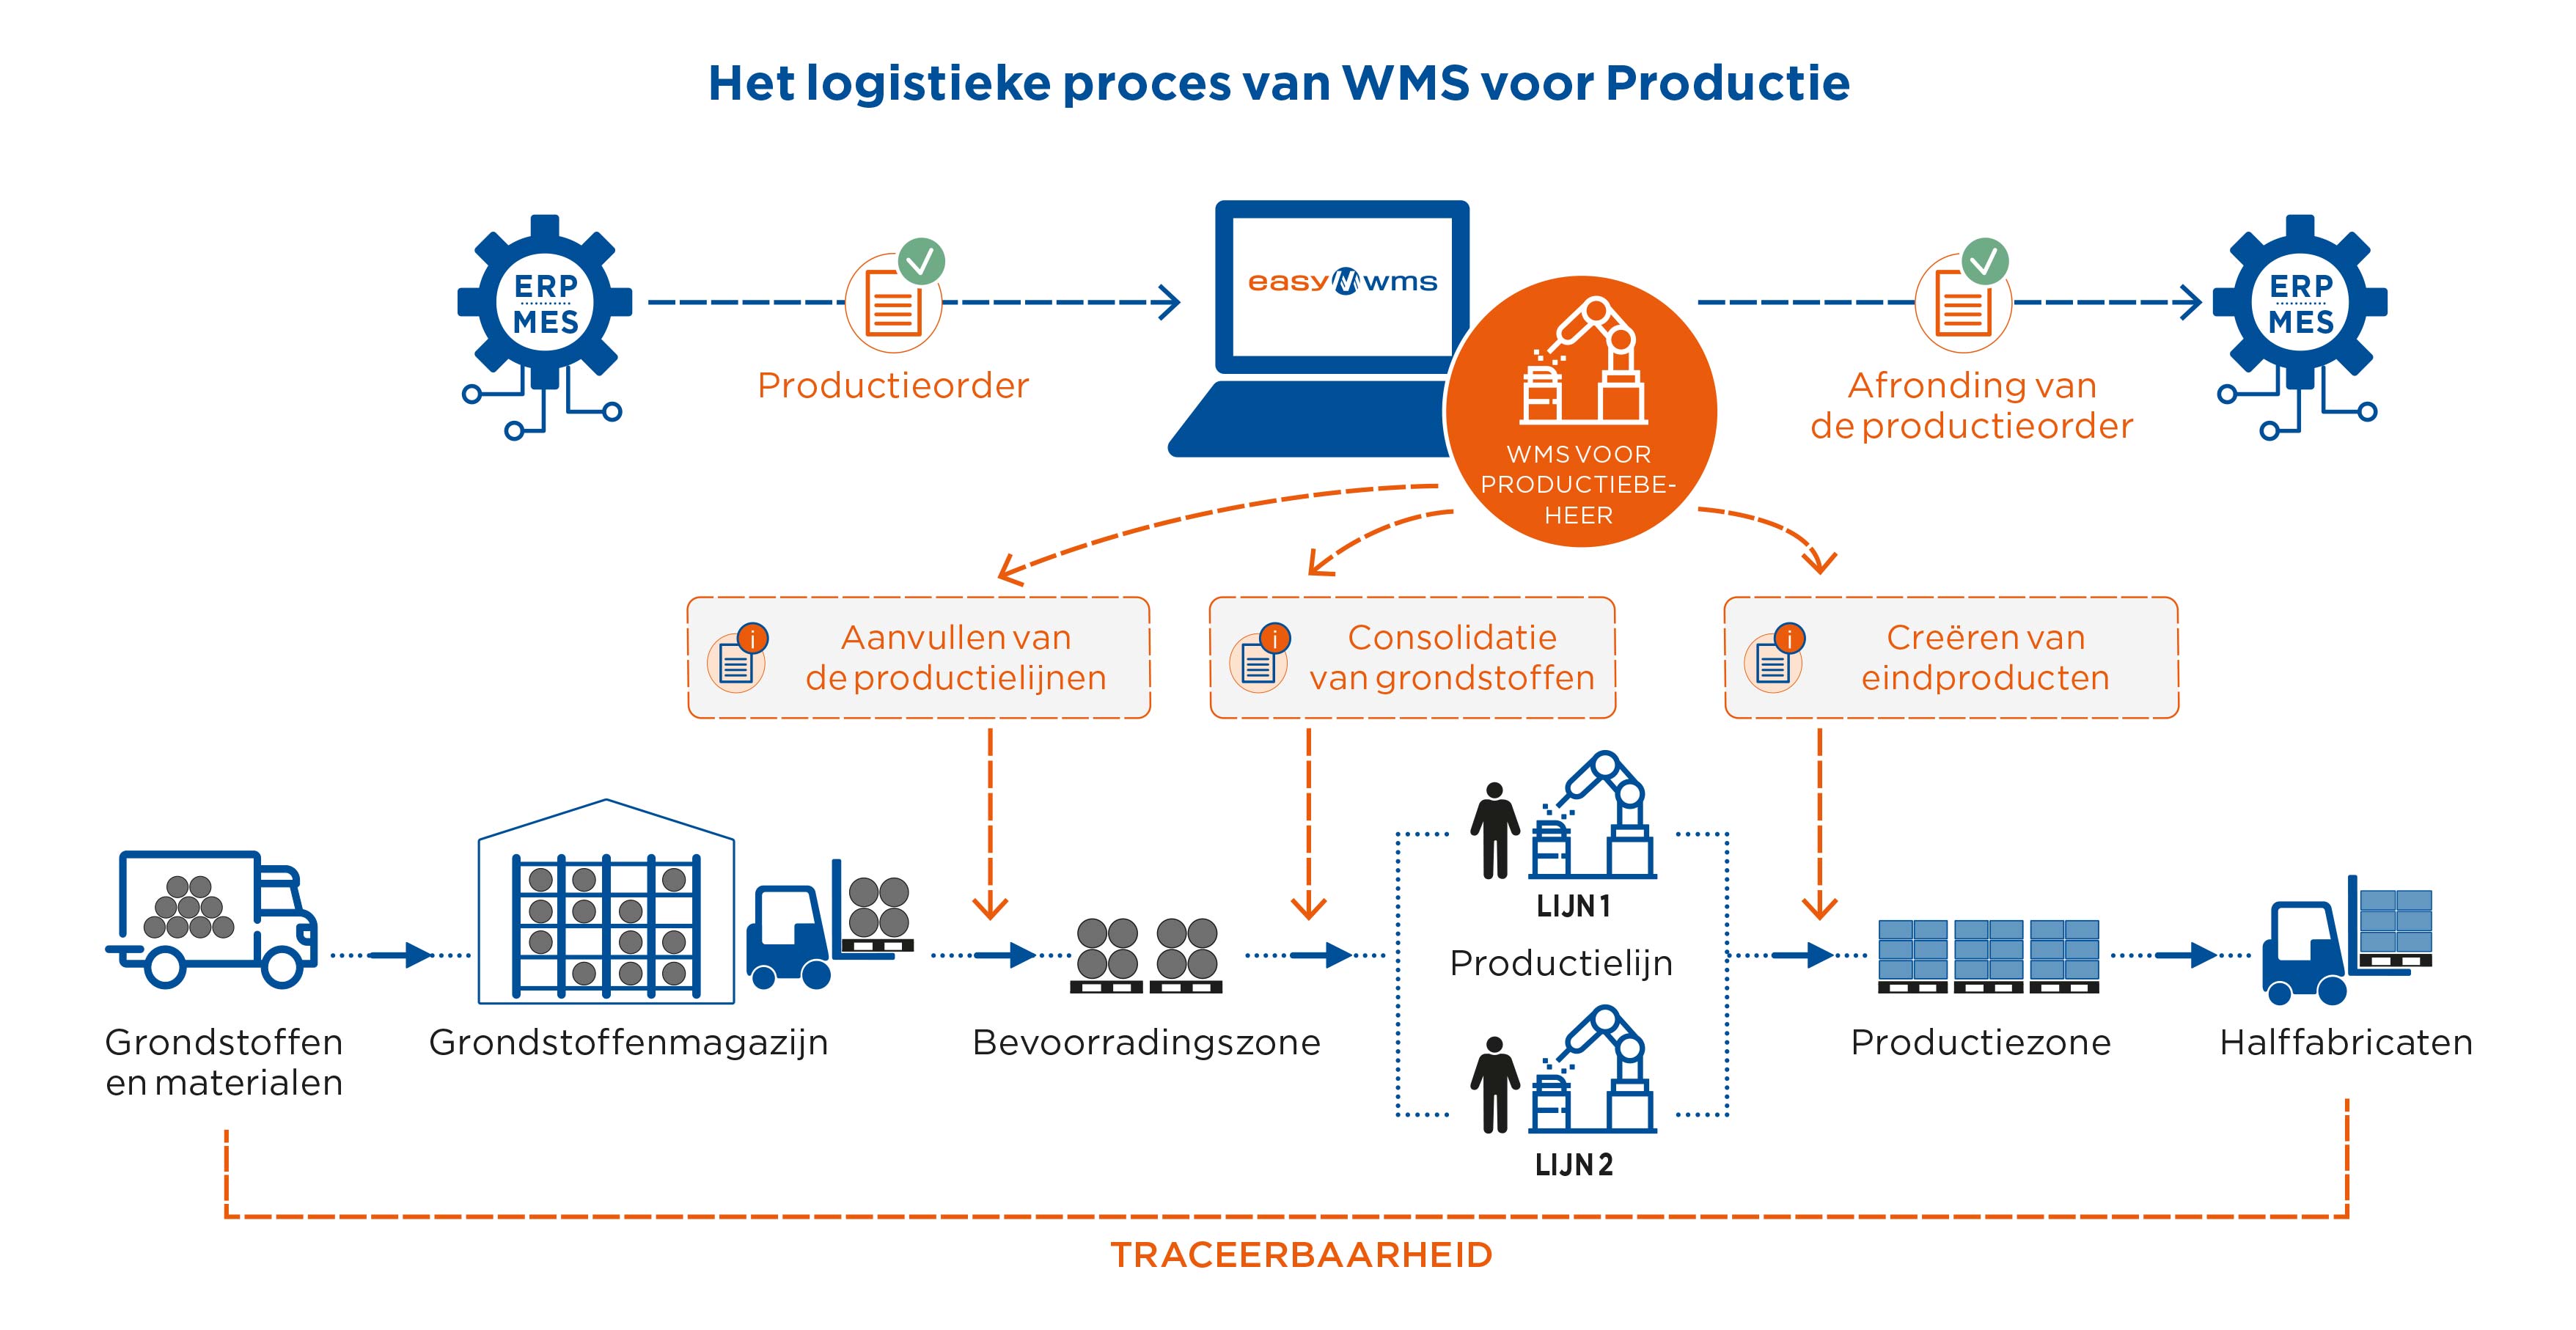 Het logistieke proces van WMS voor Productie